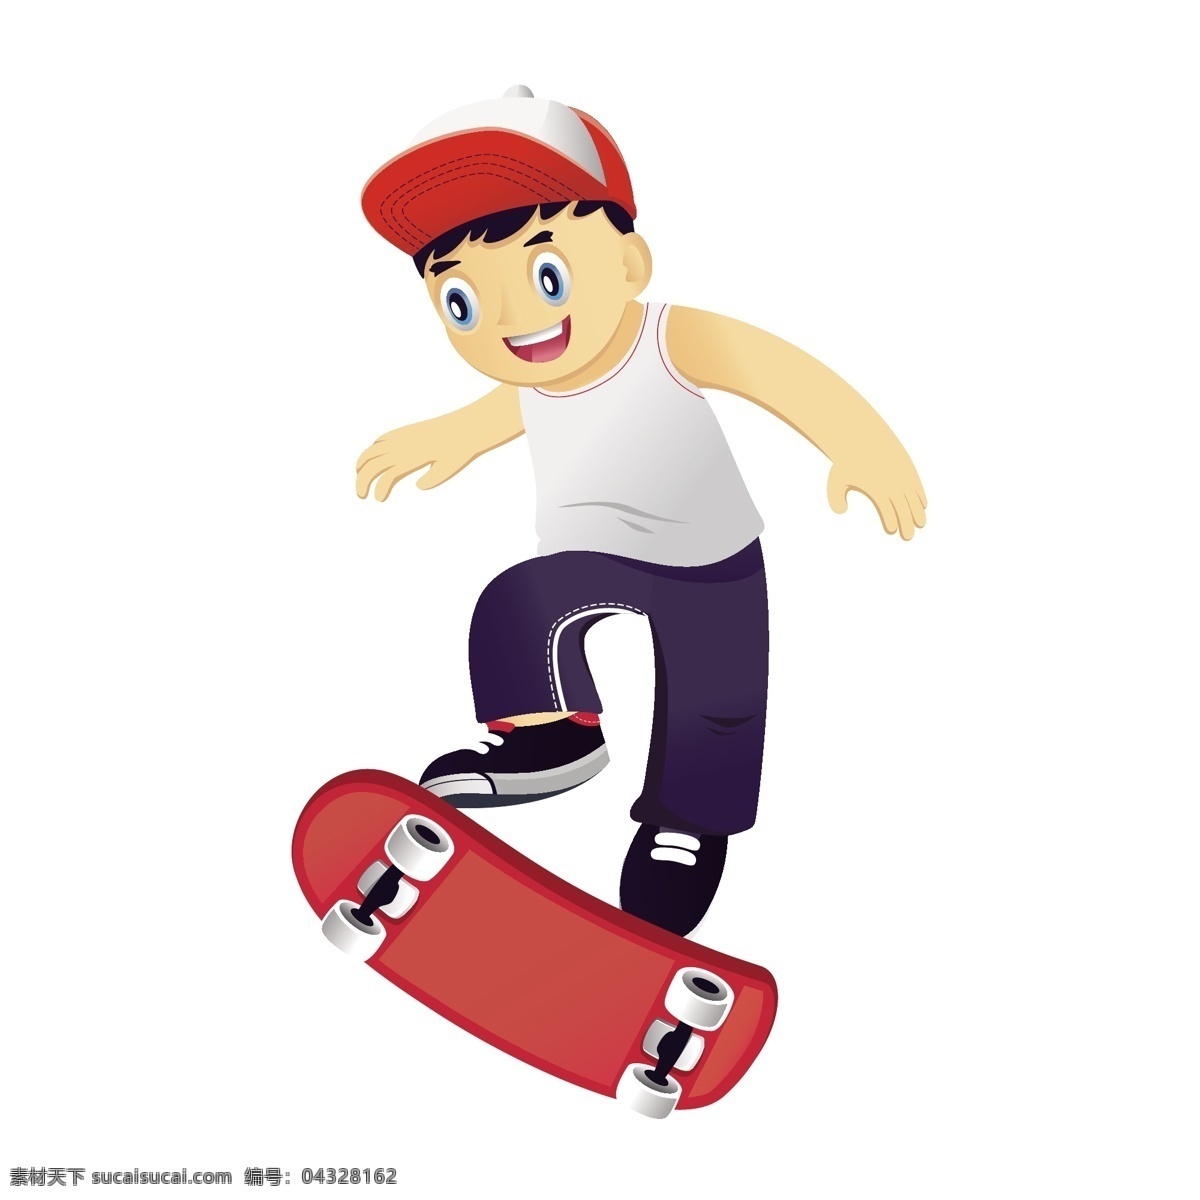 高难度 滑板 动作 矢量 卡通 卡通滑板 帽子 帽子男孩 可爱 可爱男孩 卡通男孩 滑板运动 体育 体育运动